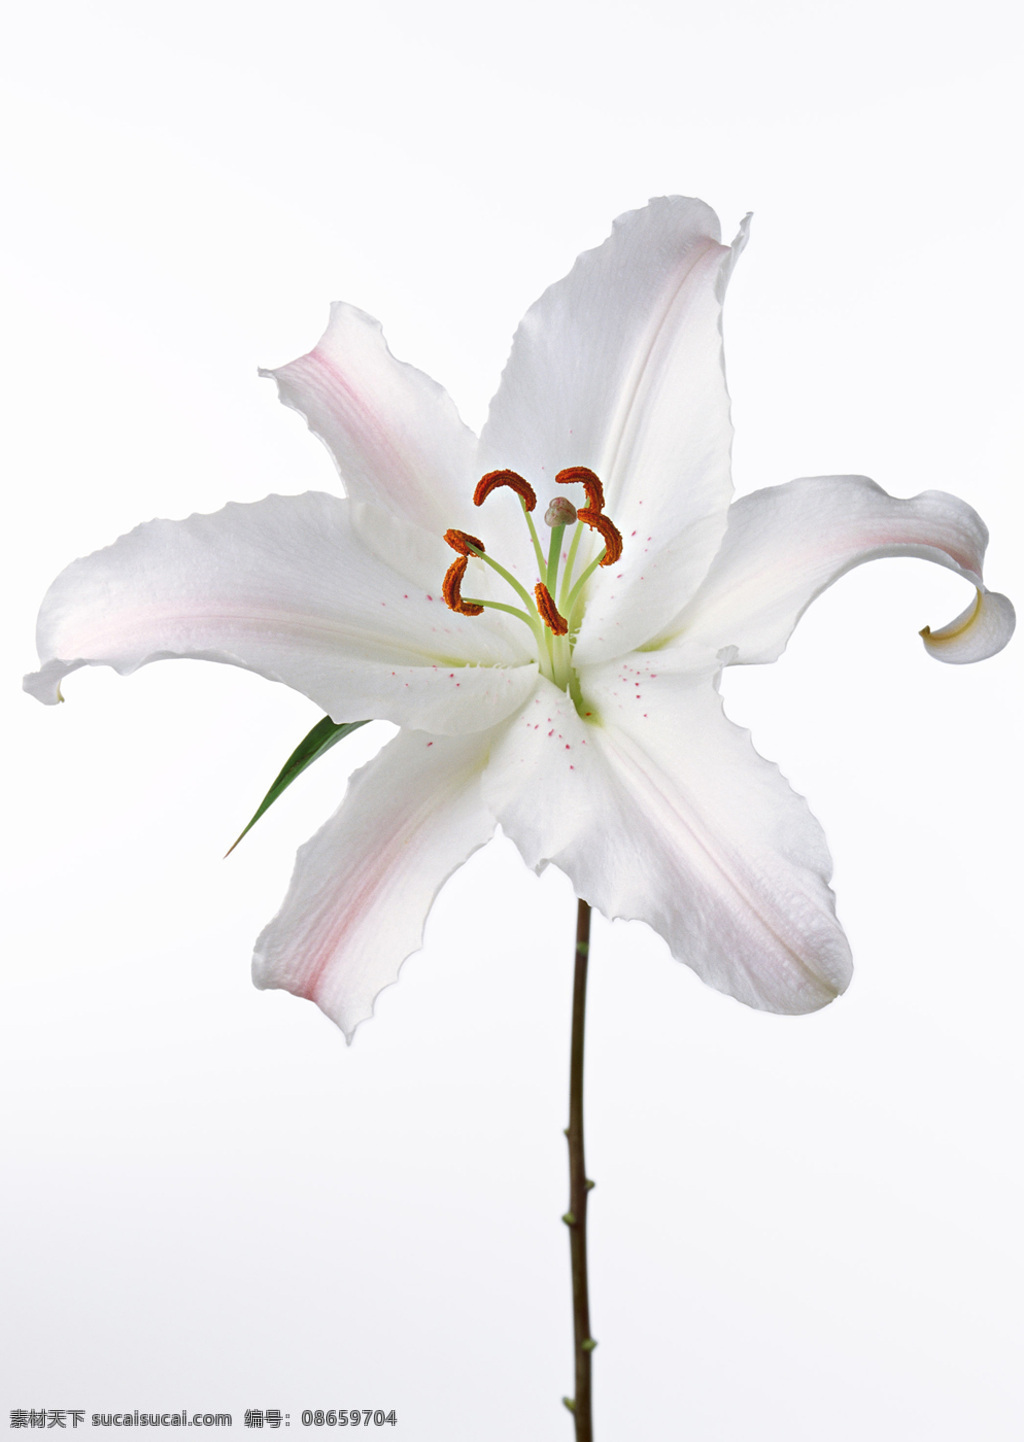 位图免费下载 服装图案 花朵 花卉 位图 写实花卉 植物摄影 面料图库 服装设计 图案花型